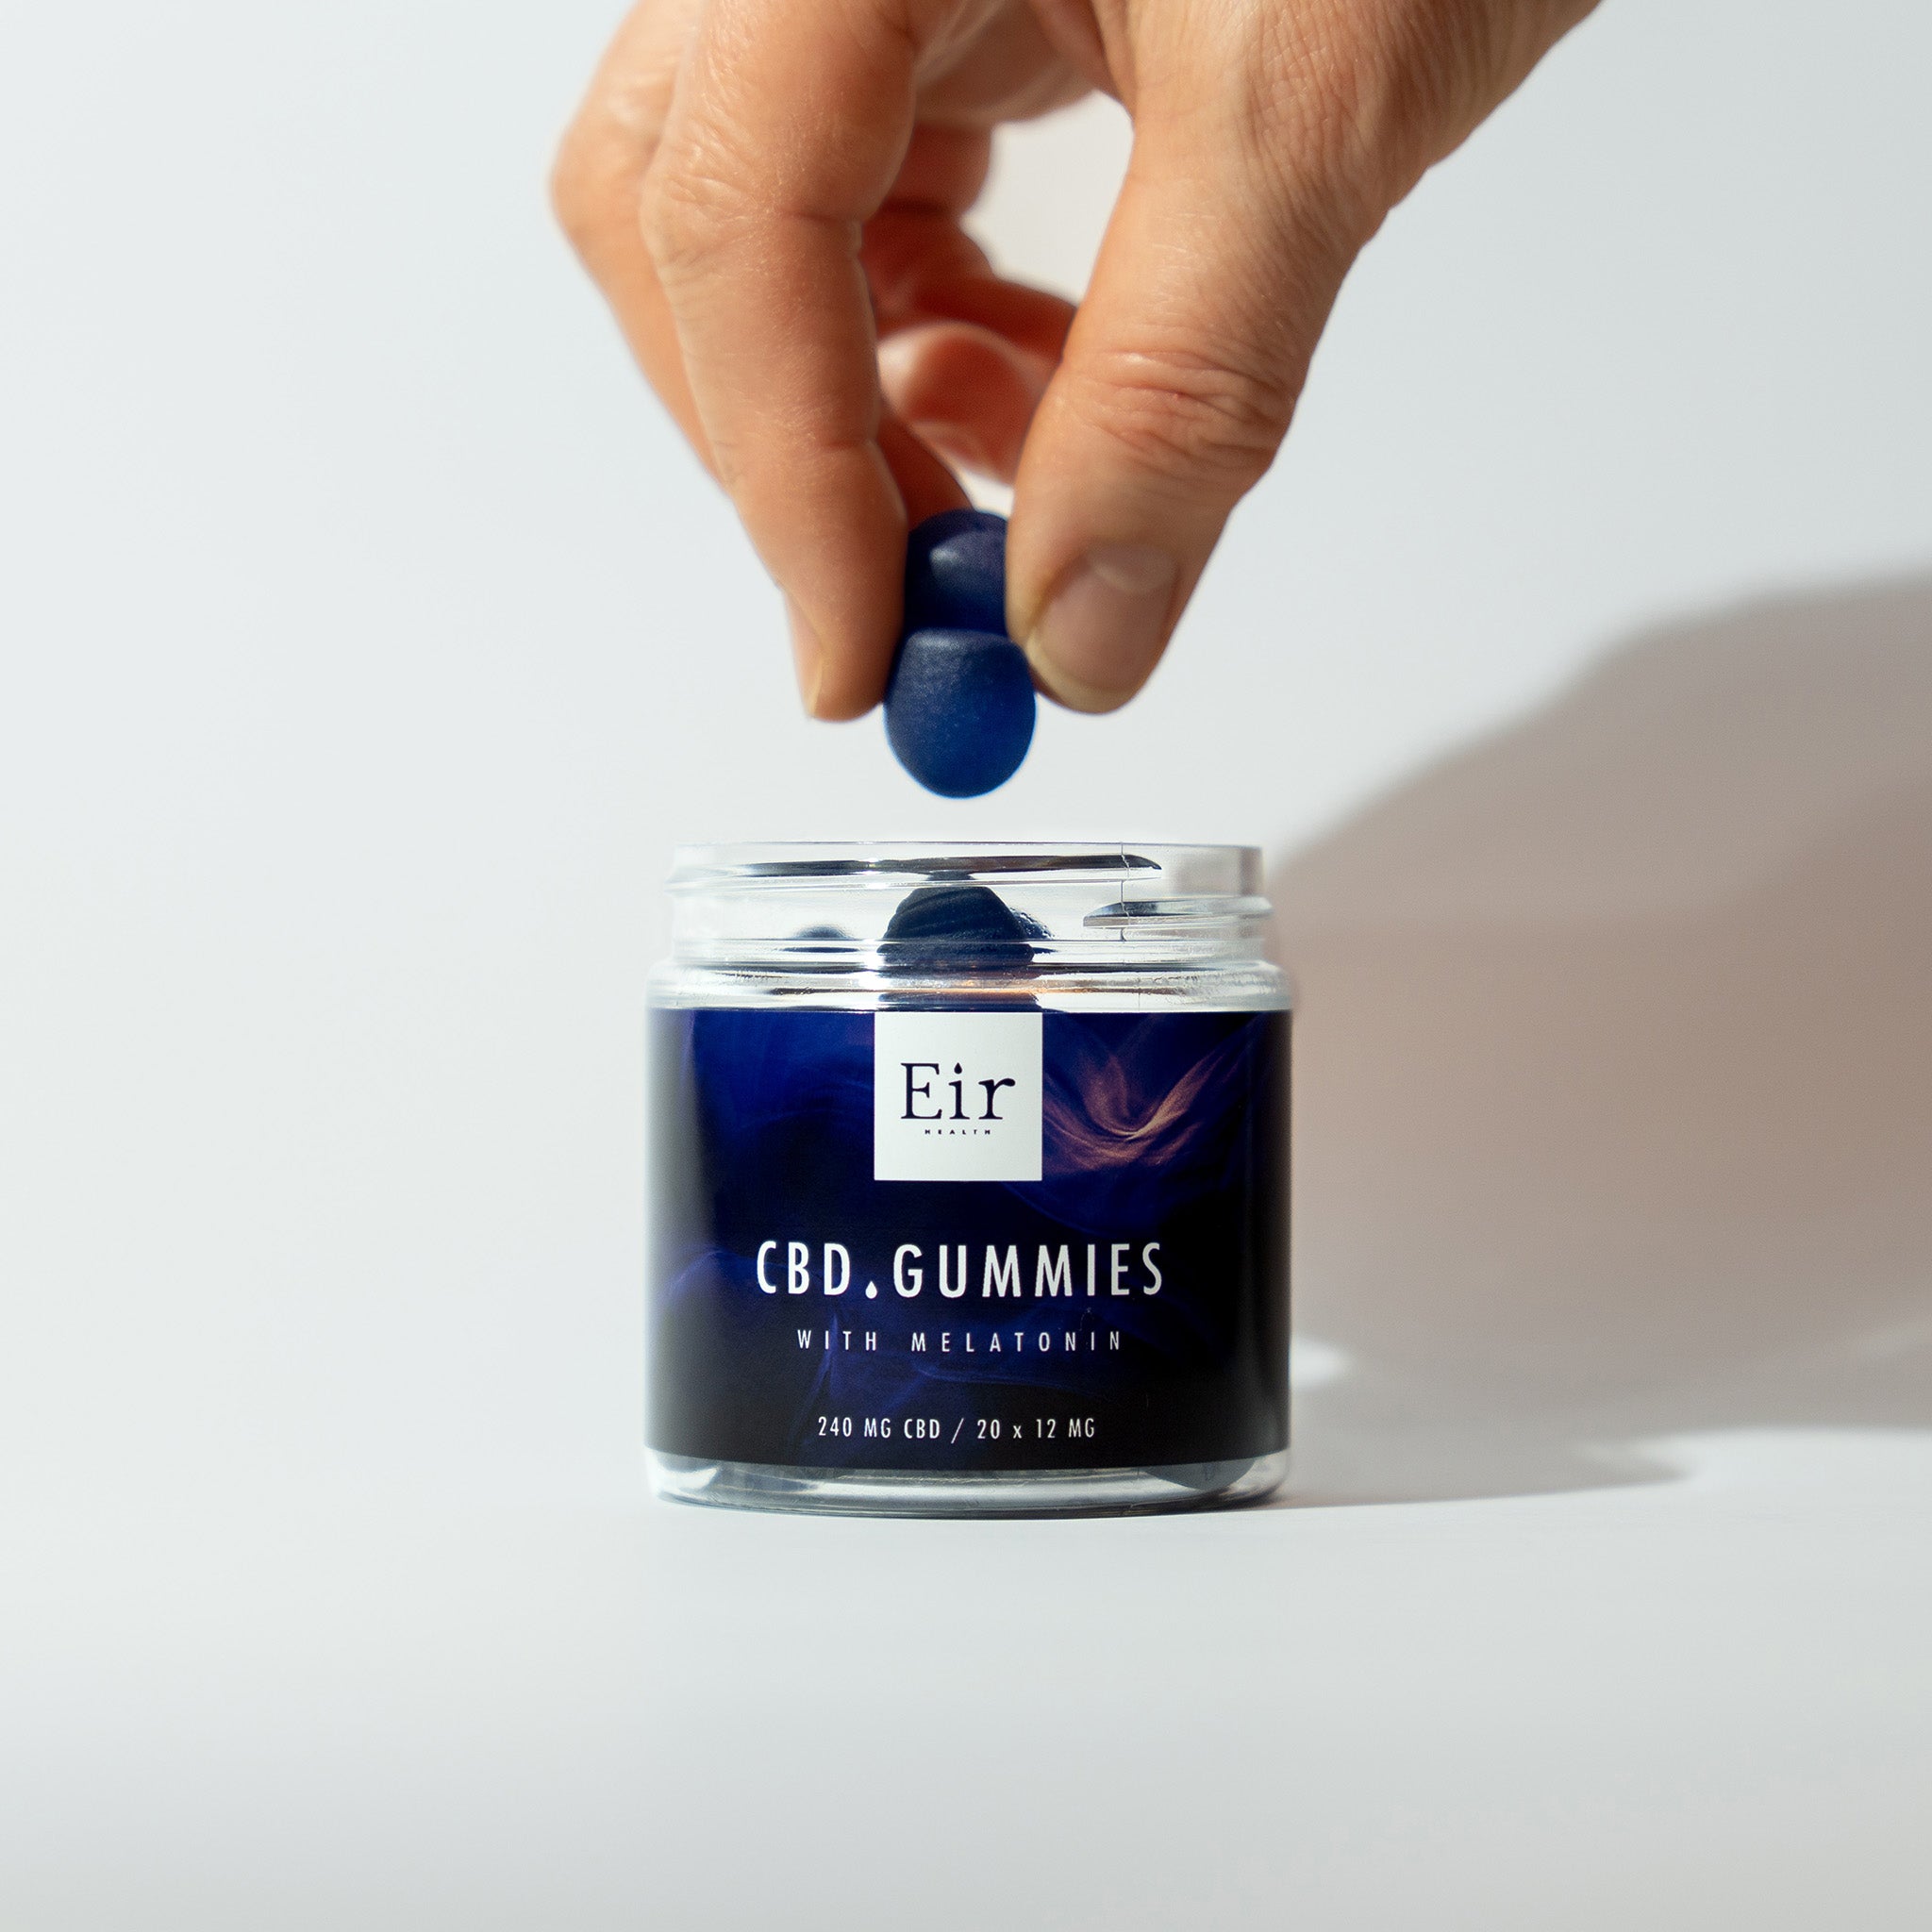 Dłoń wyjmująca niebieskiego żelka CBD z przezroczystego słoika z etykietą Eir CBD Gummies z melatoniną, 240 mg CBD, na białym tle.